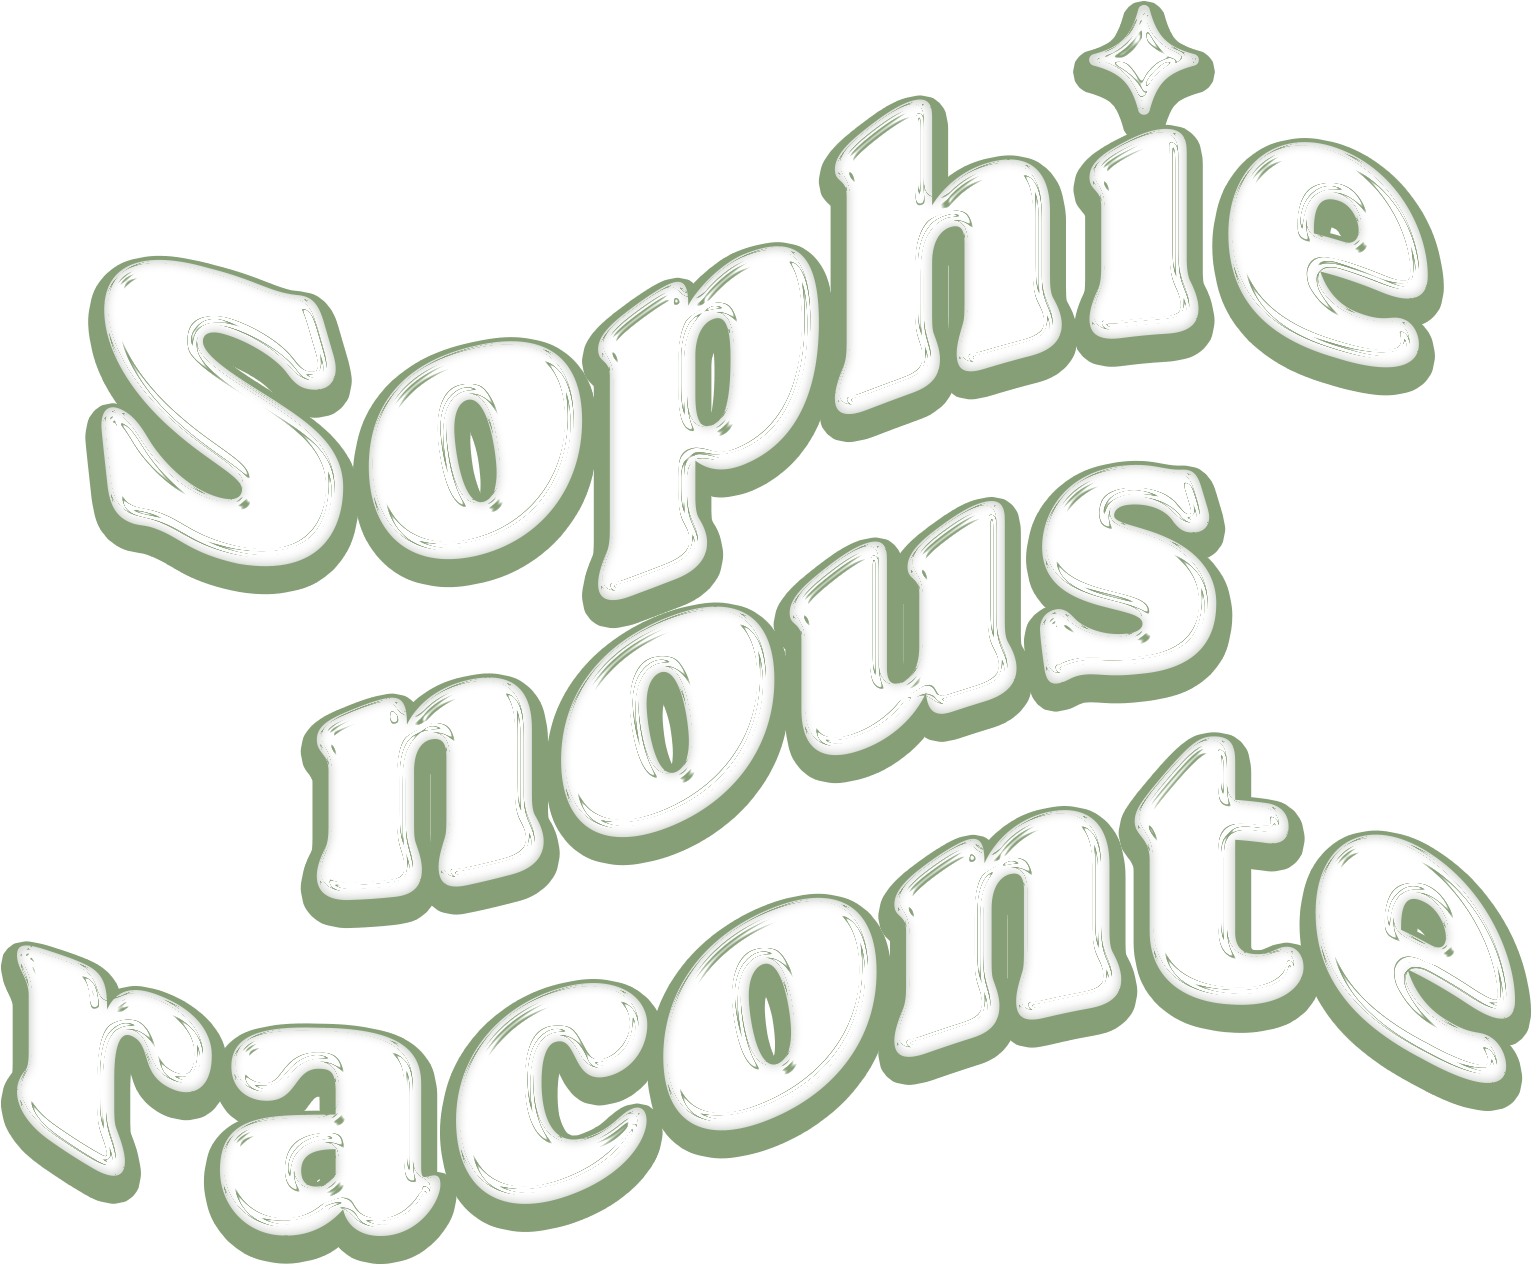 Sophie nous raconte